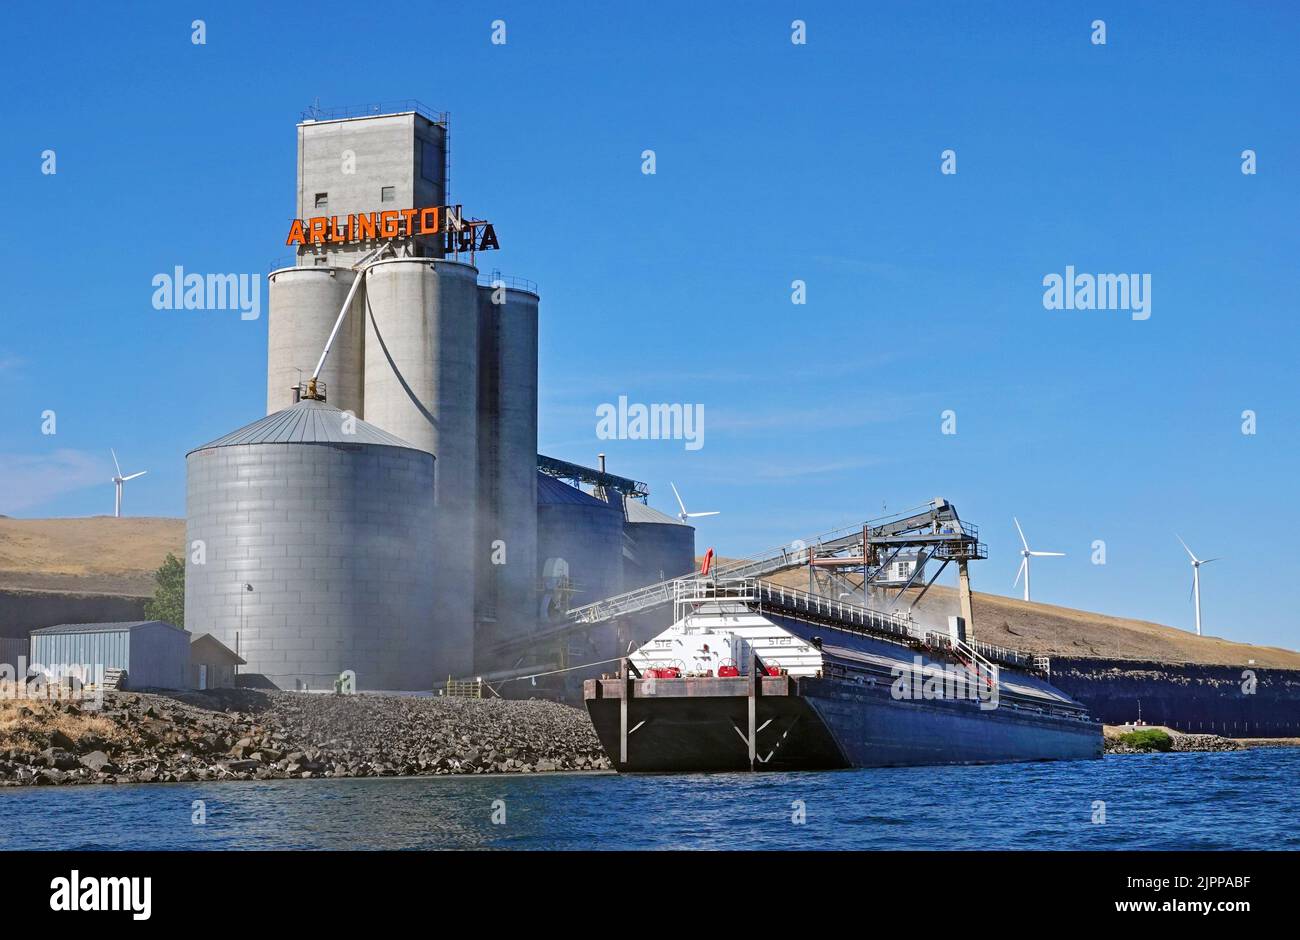 Una barcaza en el río Columbia, en el pequeño puerto de Arlington, Oregón, lleva una carga de trigo recién cortado de un enorme silo situado en la costa. Foto de stock